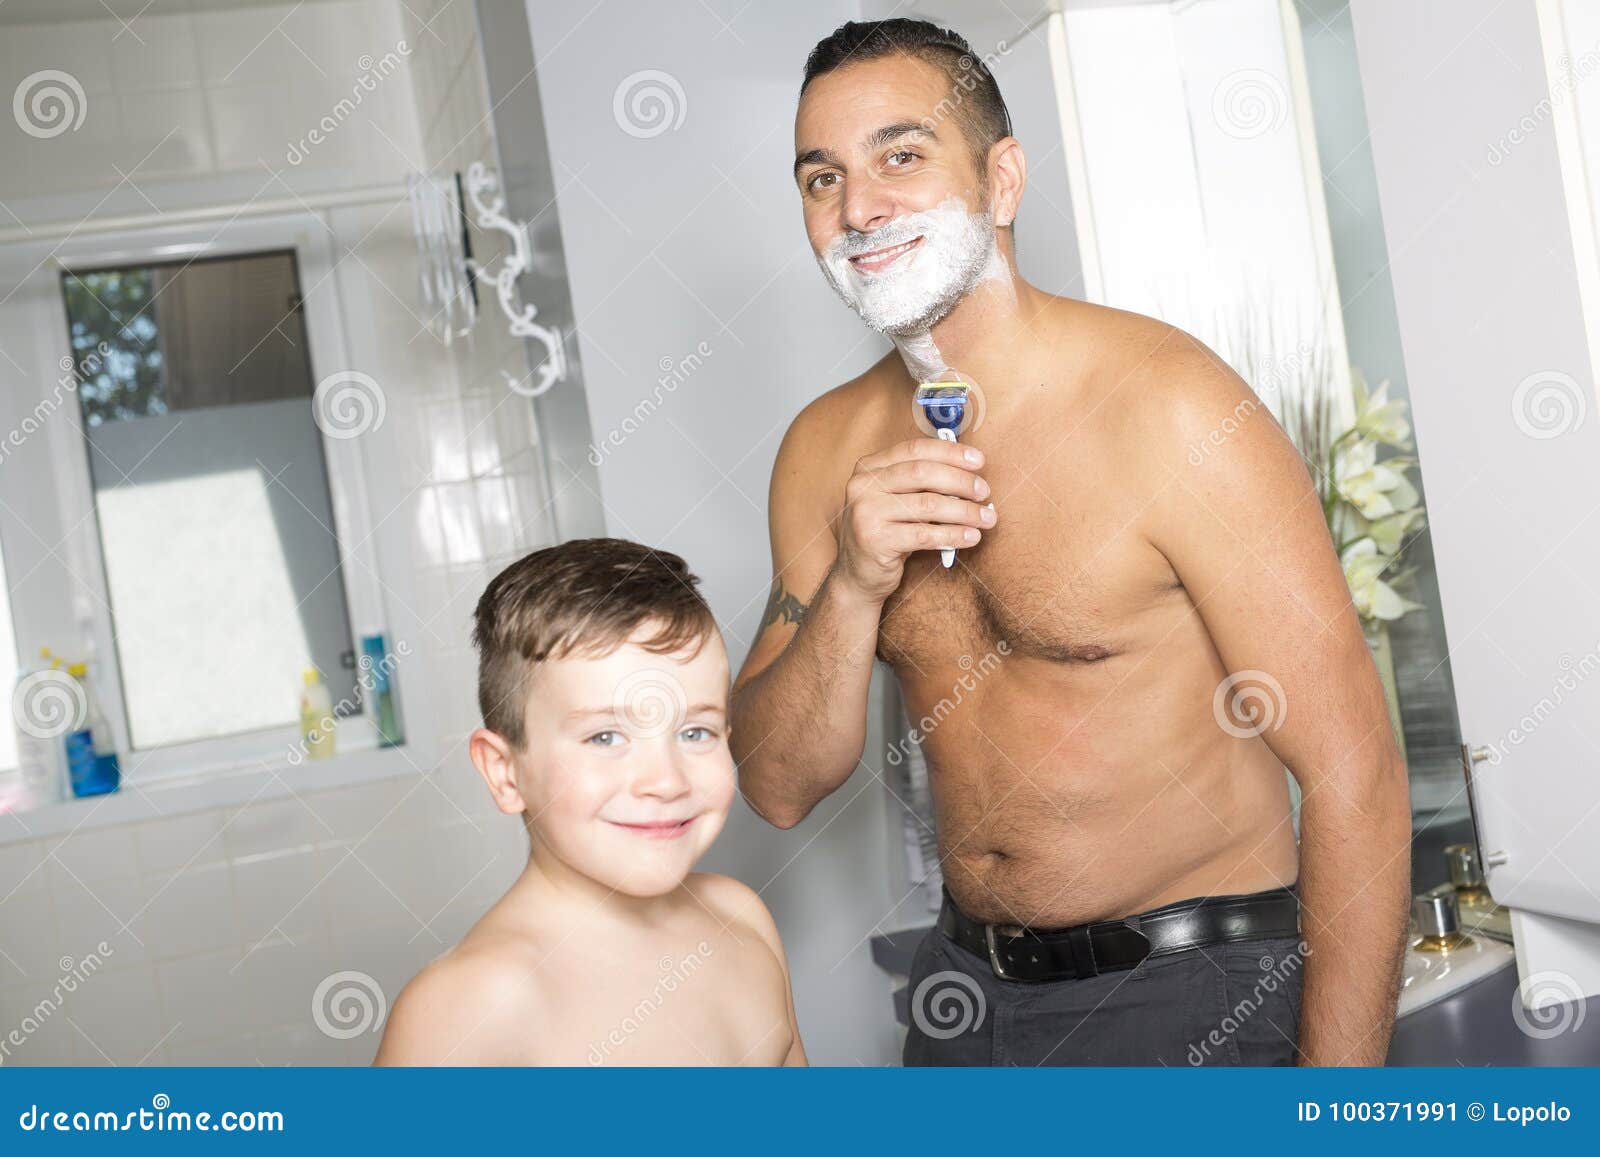 Папа сын в ванной. Фотосессия пап в ванне. Малыш с папой в ванне. Папа купается. Сын в ванне.